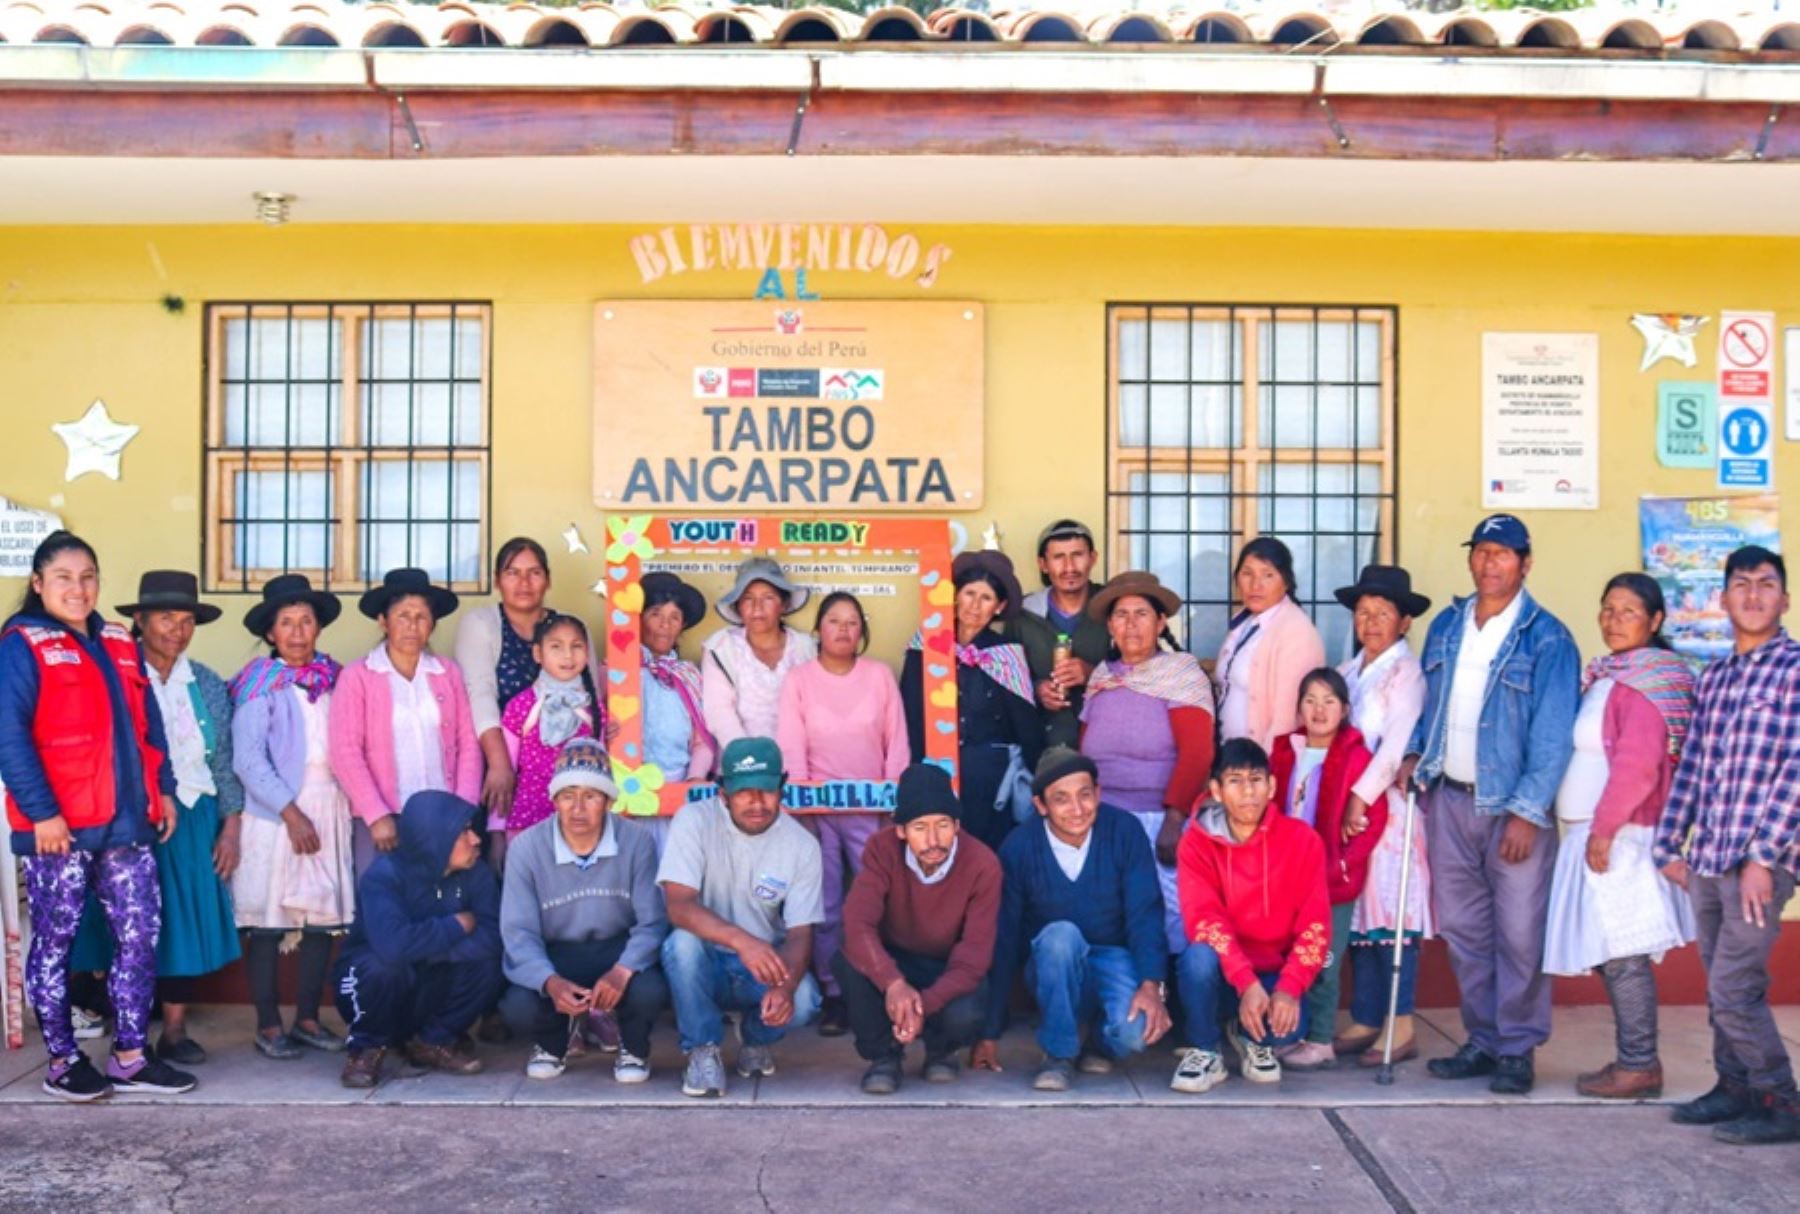 Veinticinco personas con discapacidad del distrito de Huamanguilla, en la provincia de Huanta, Ayacucho, están camino a convertirse en pequeños empresarios gracias a las capacitaciones que reciben en el Tambo Ancarpata del Programa PAIS del Ministerio de Desarrollo e Inclusión Social (Midis).